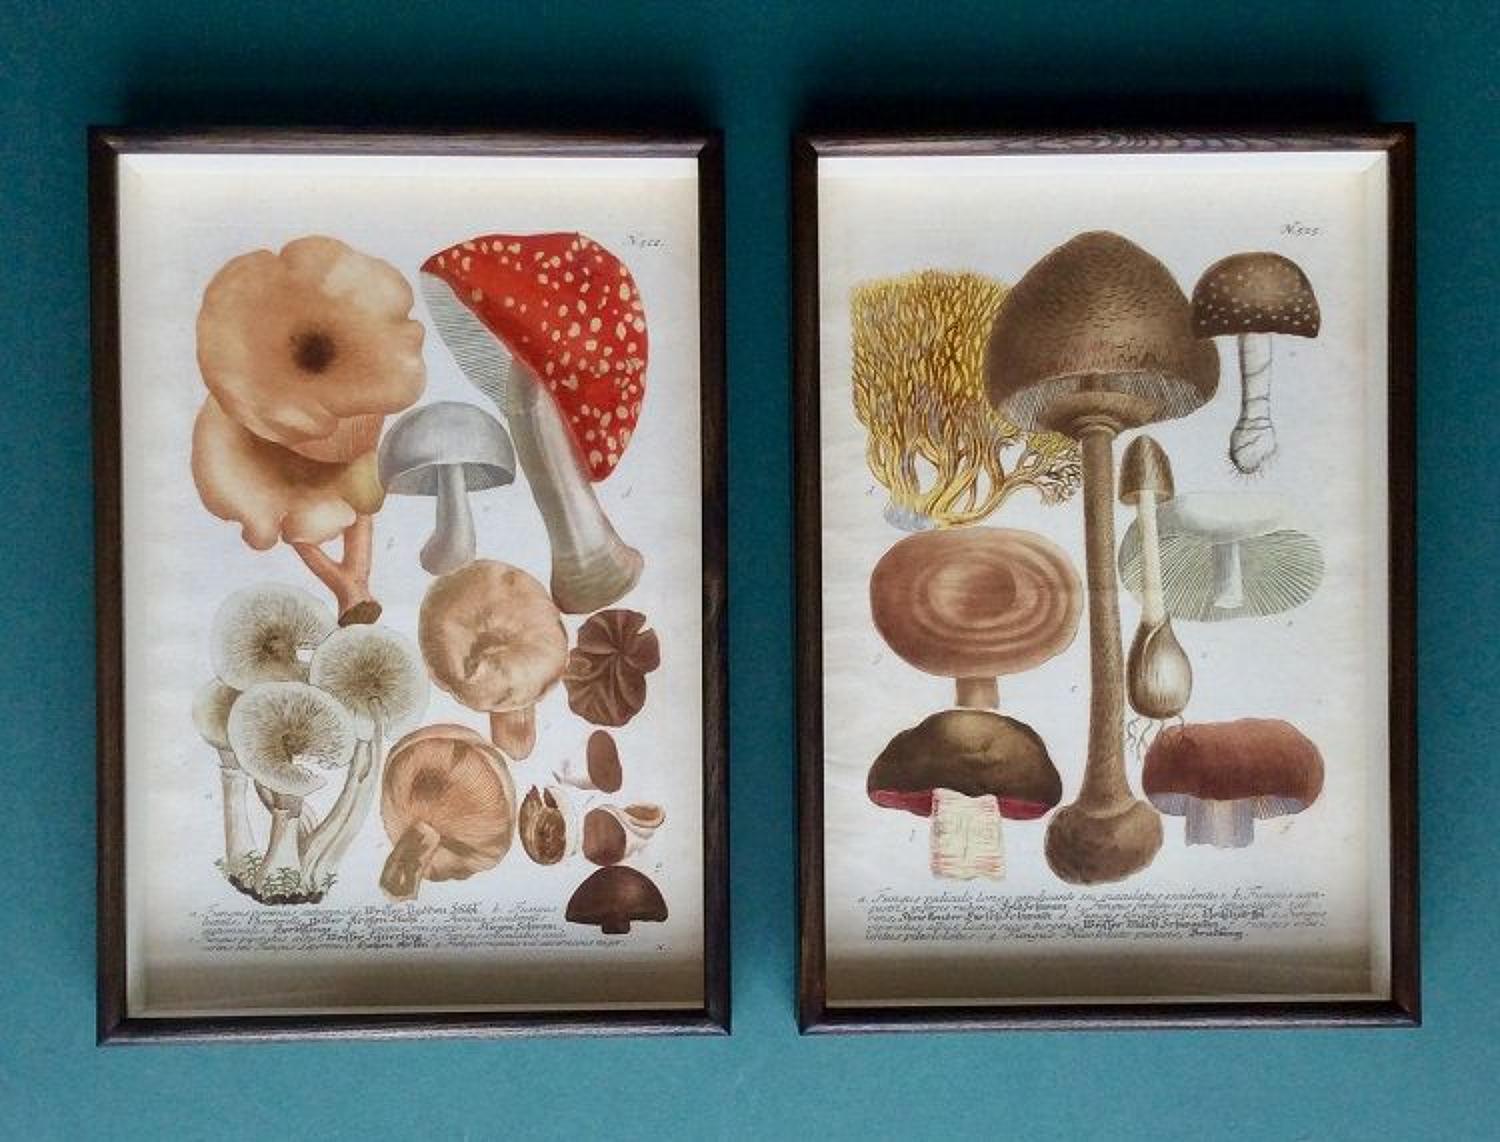 Weinmann - 18th century engravings of mushrooms